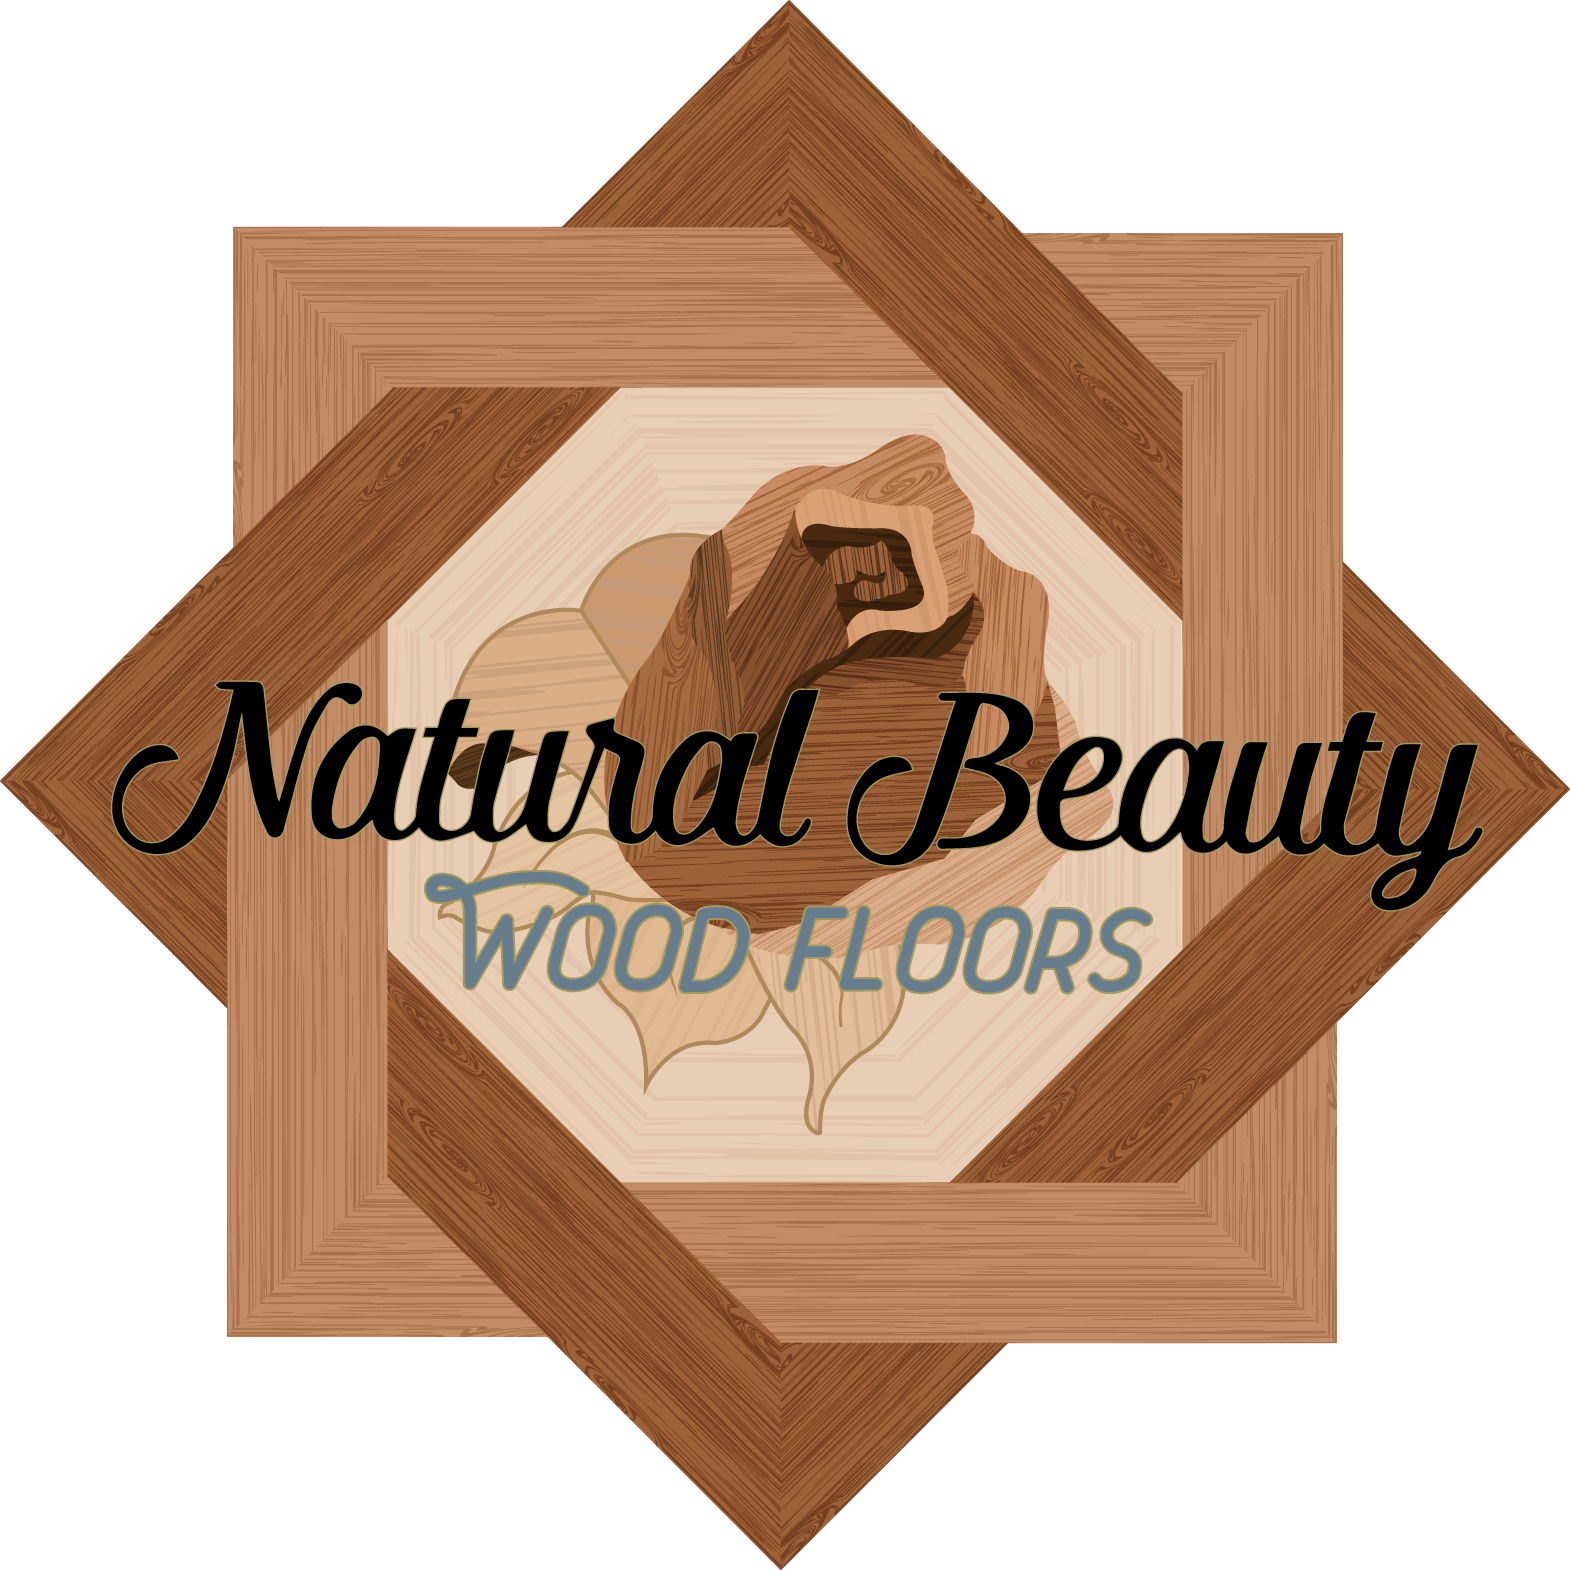 Detroit Hardwood Flooring Contractor, Hardwood Floor Refinishing Companies